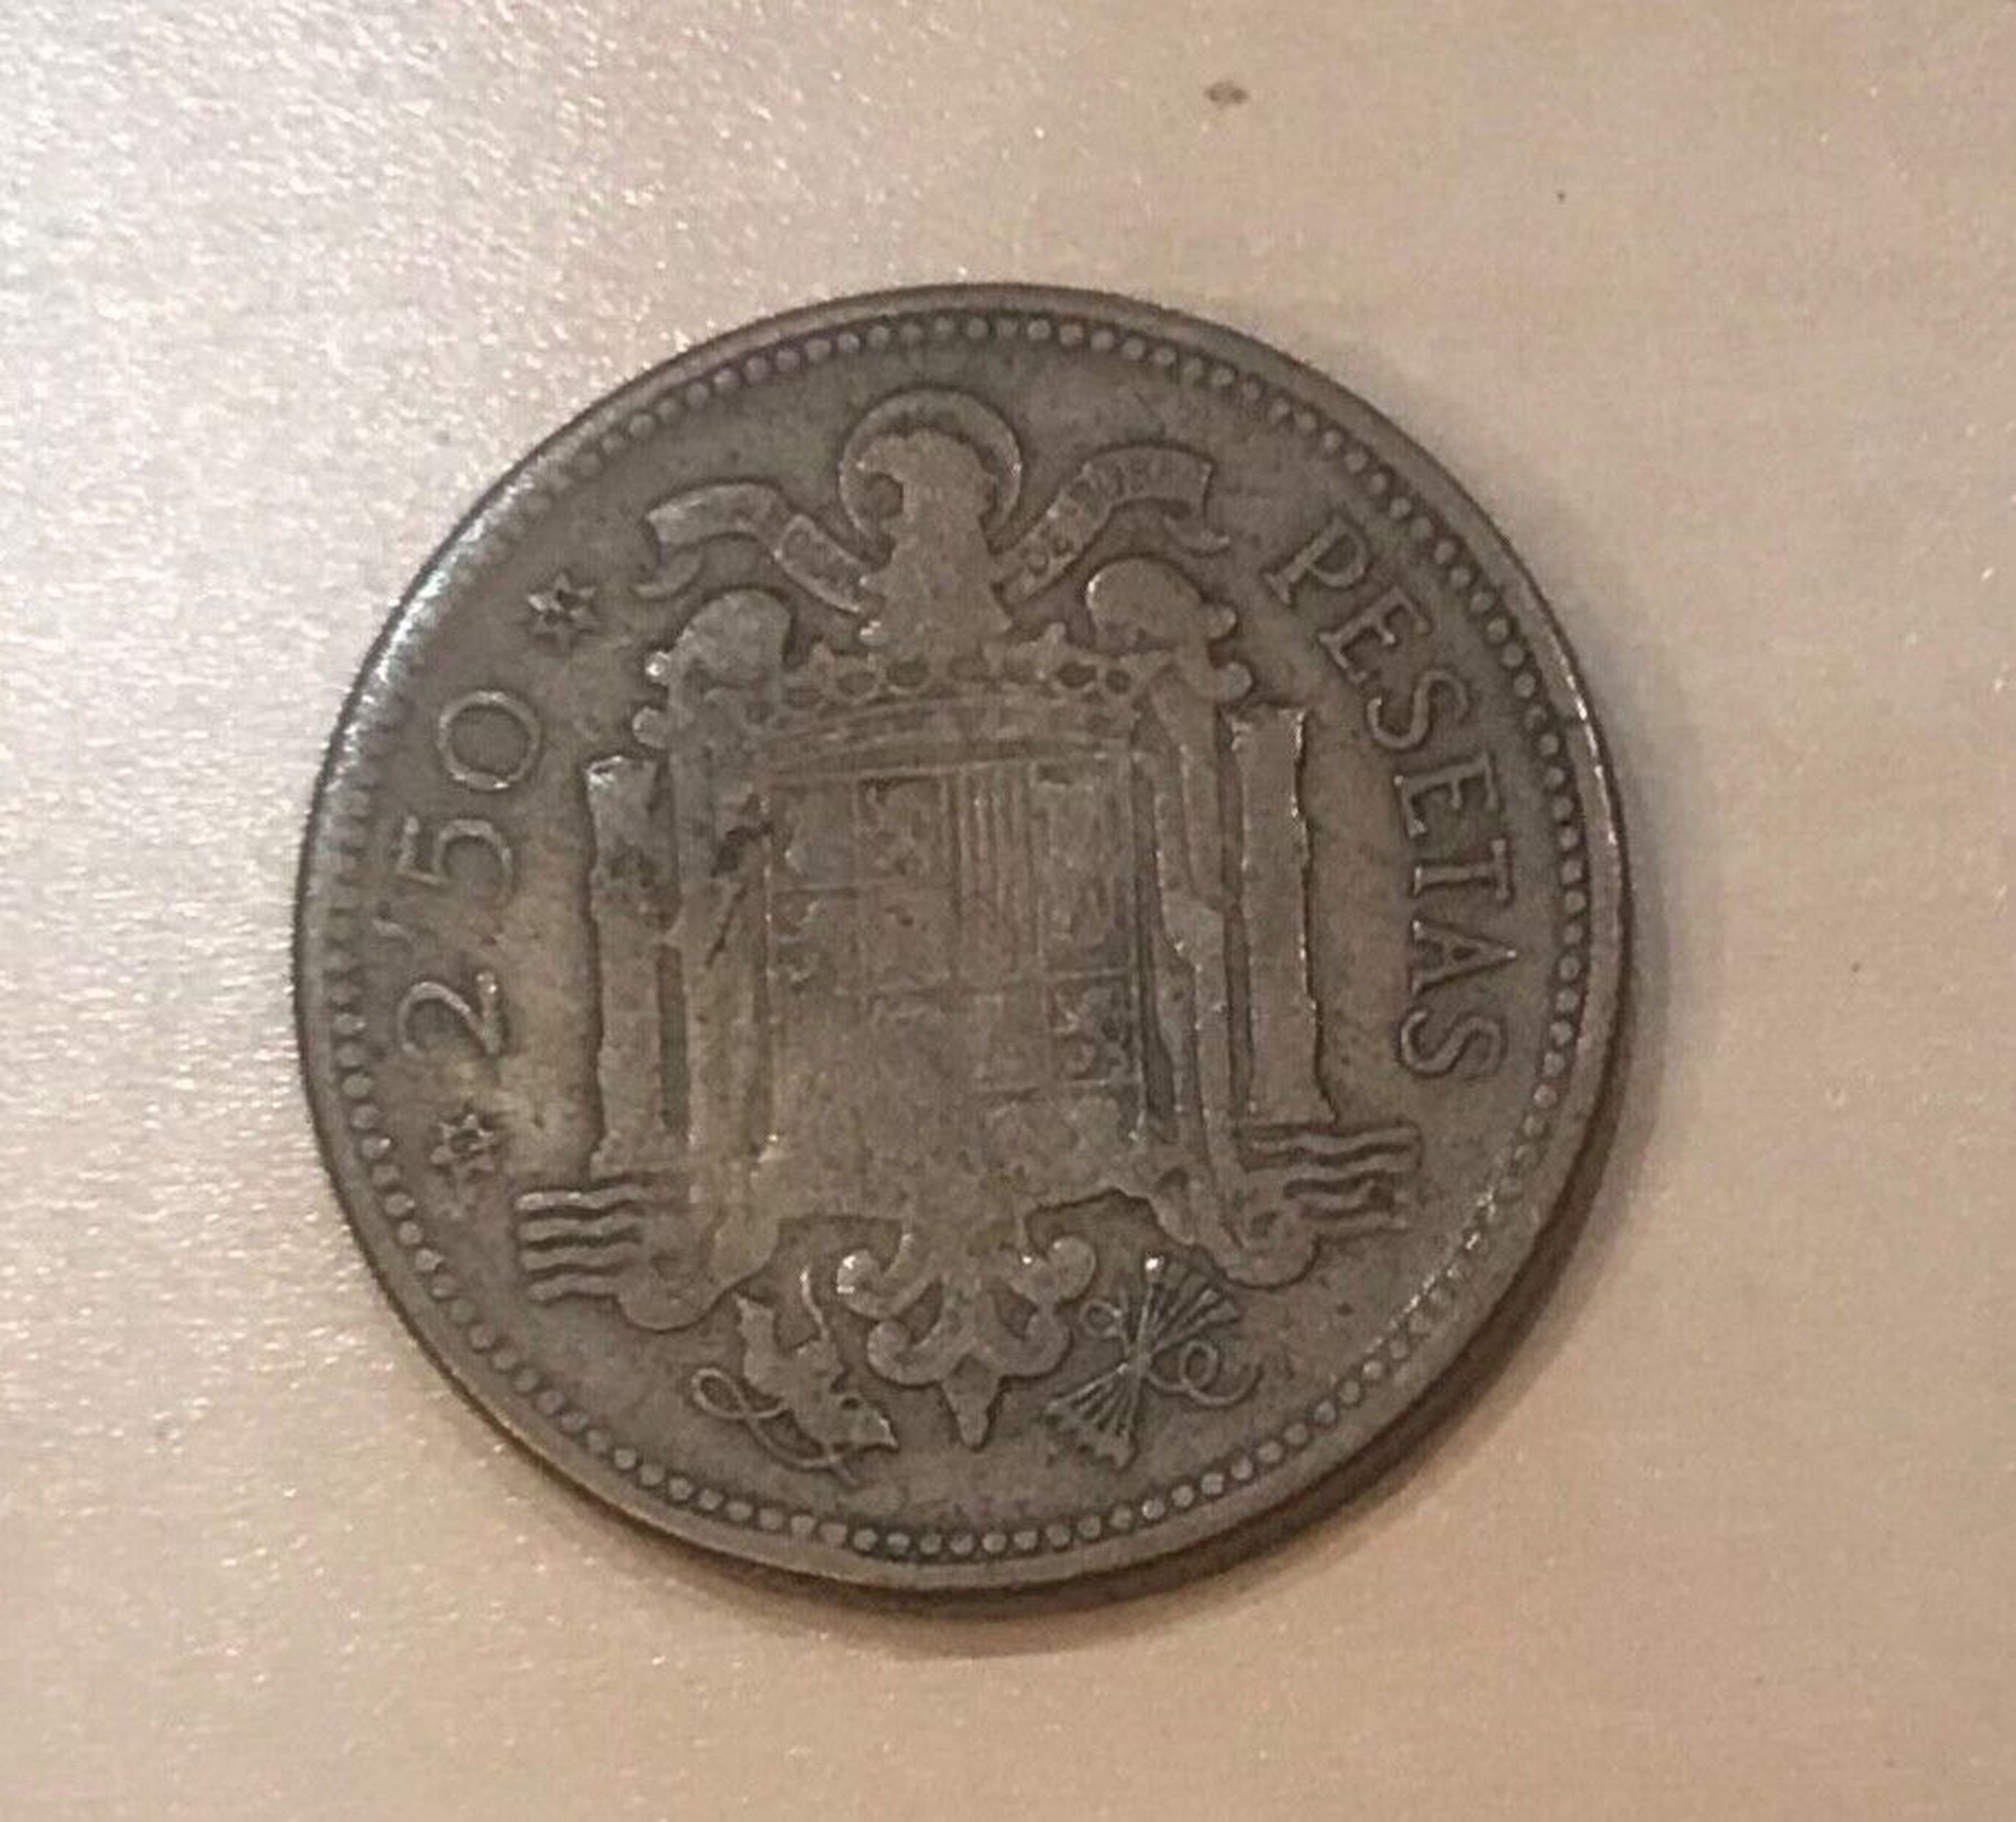 2.50 Peseta Coin